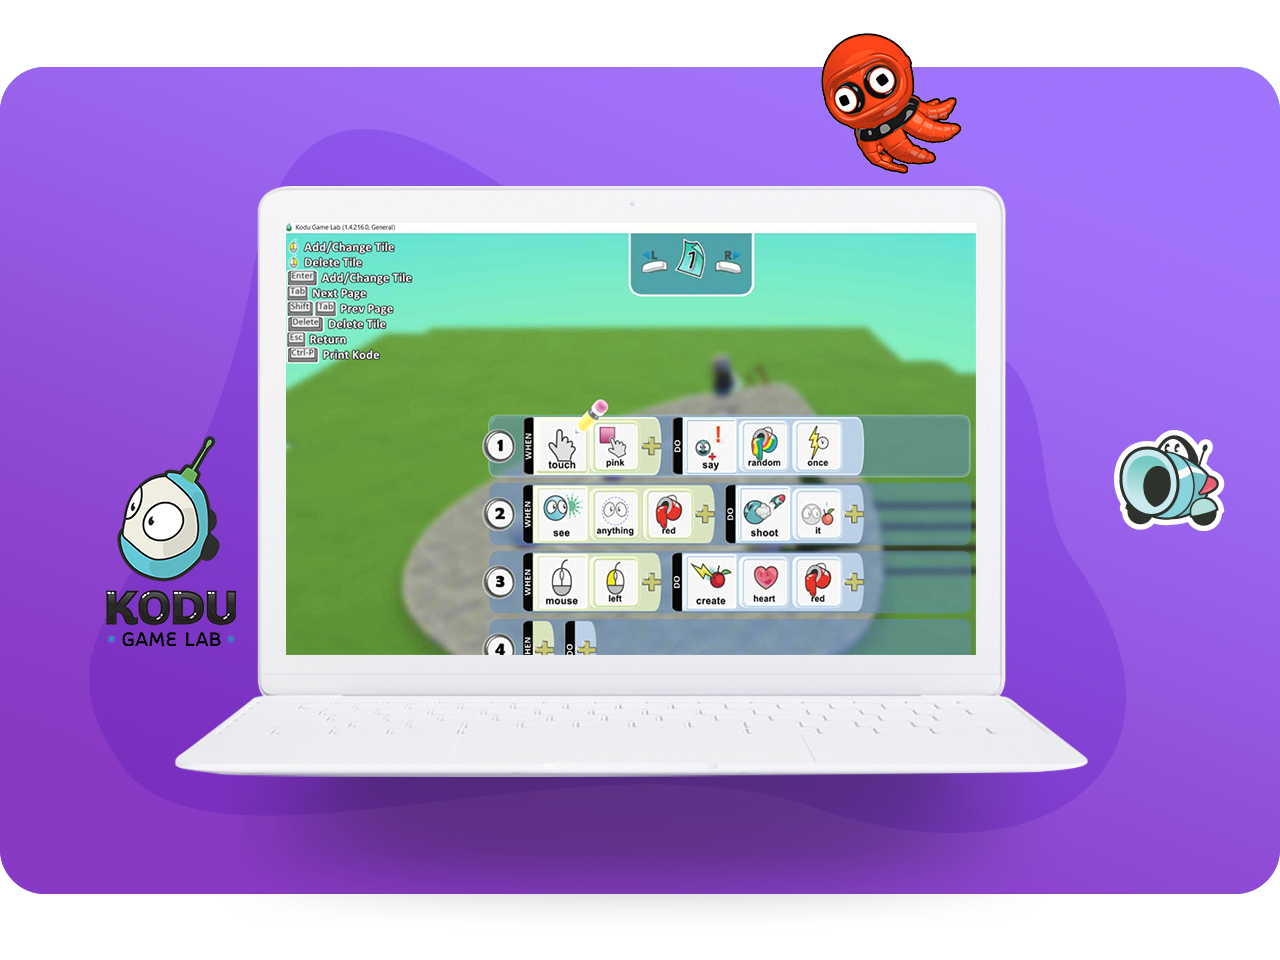 Kodu game играть. Коди гейм Лаб. The Lab игра. Kodu программирование для детей. Kodu game Lab.